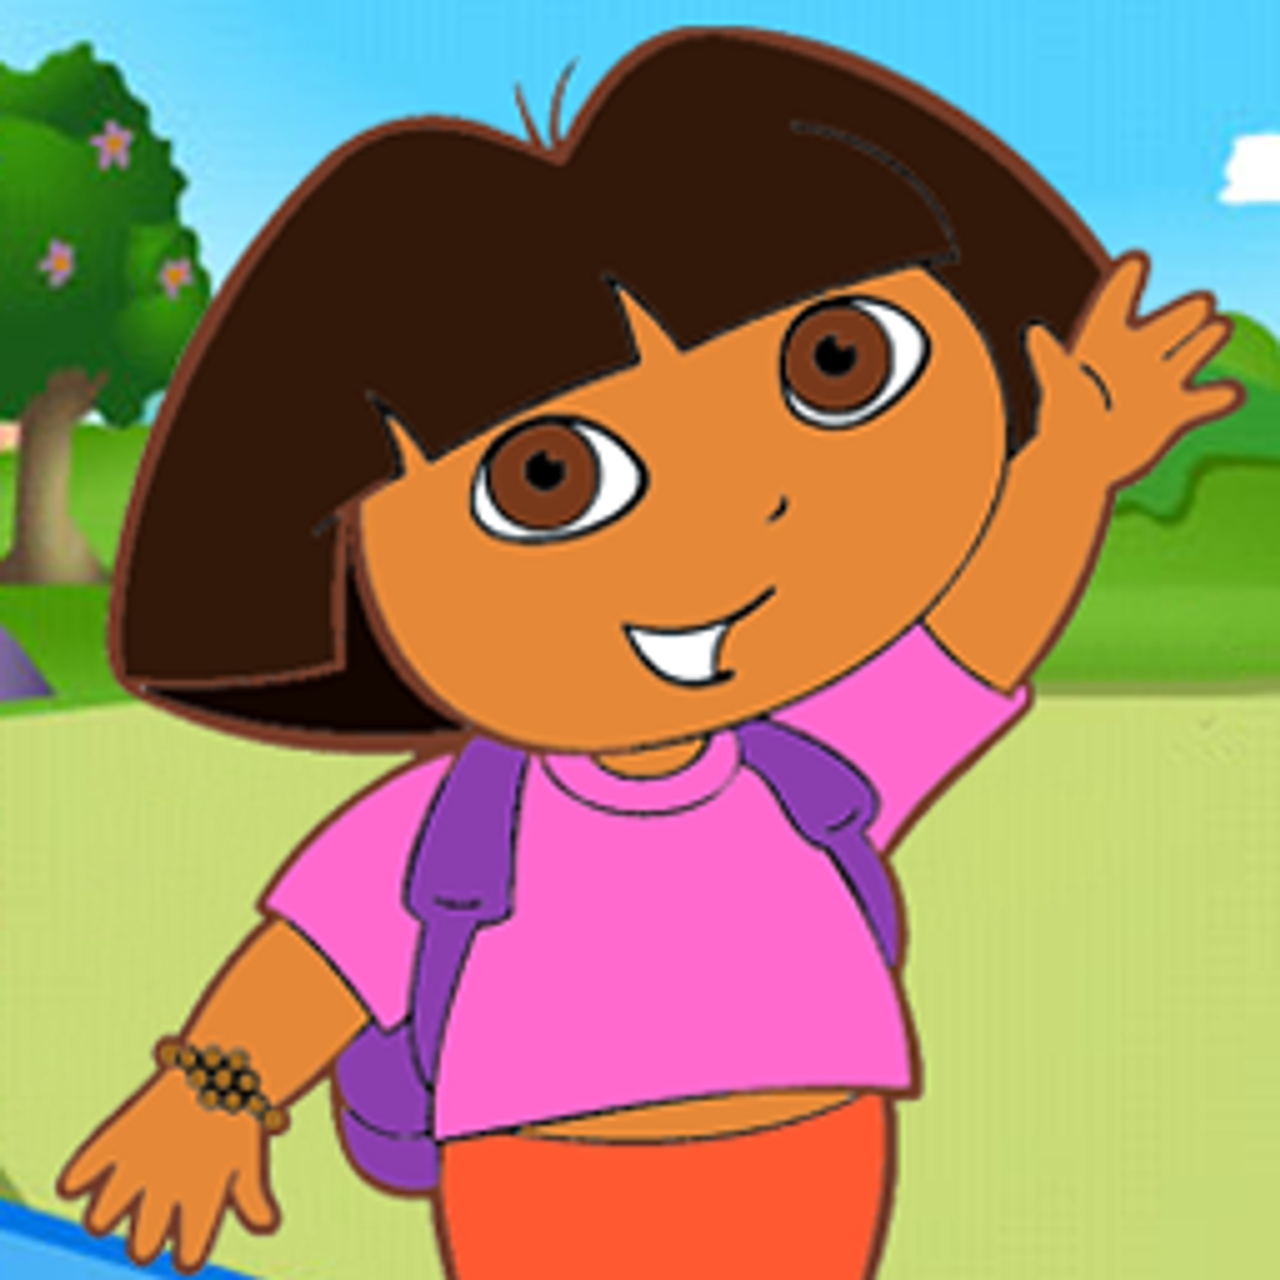 Dora's Carnival Adventure